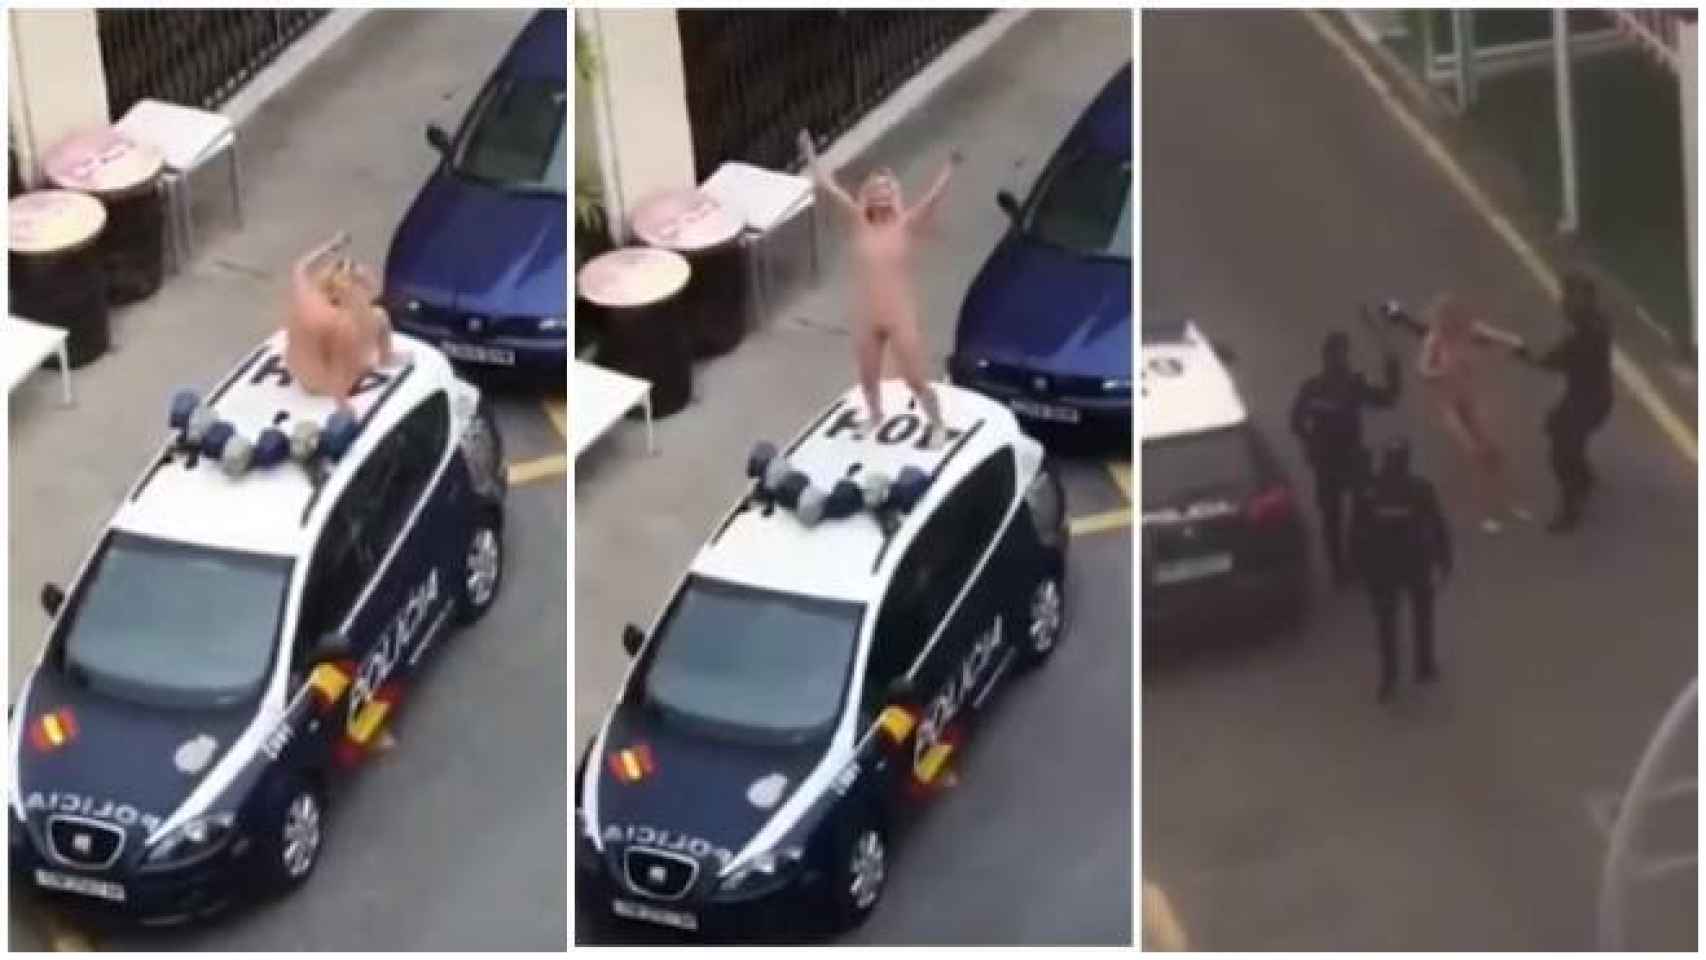 Los agentes tuvieron que intervenir para detener a la mujer que se había encaramado en el coche patrulla completamente desnuda